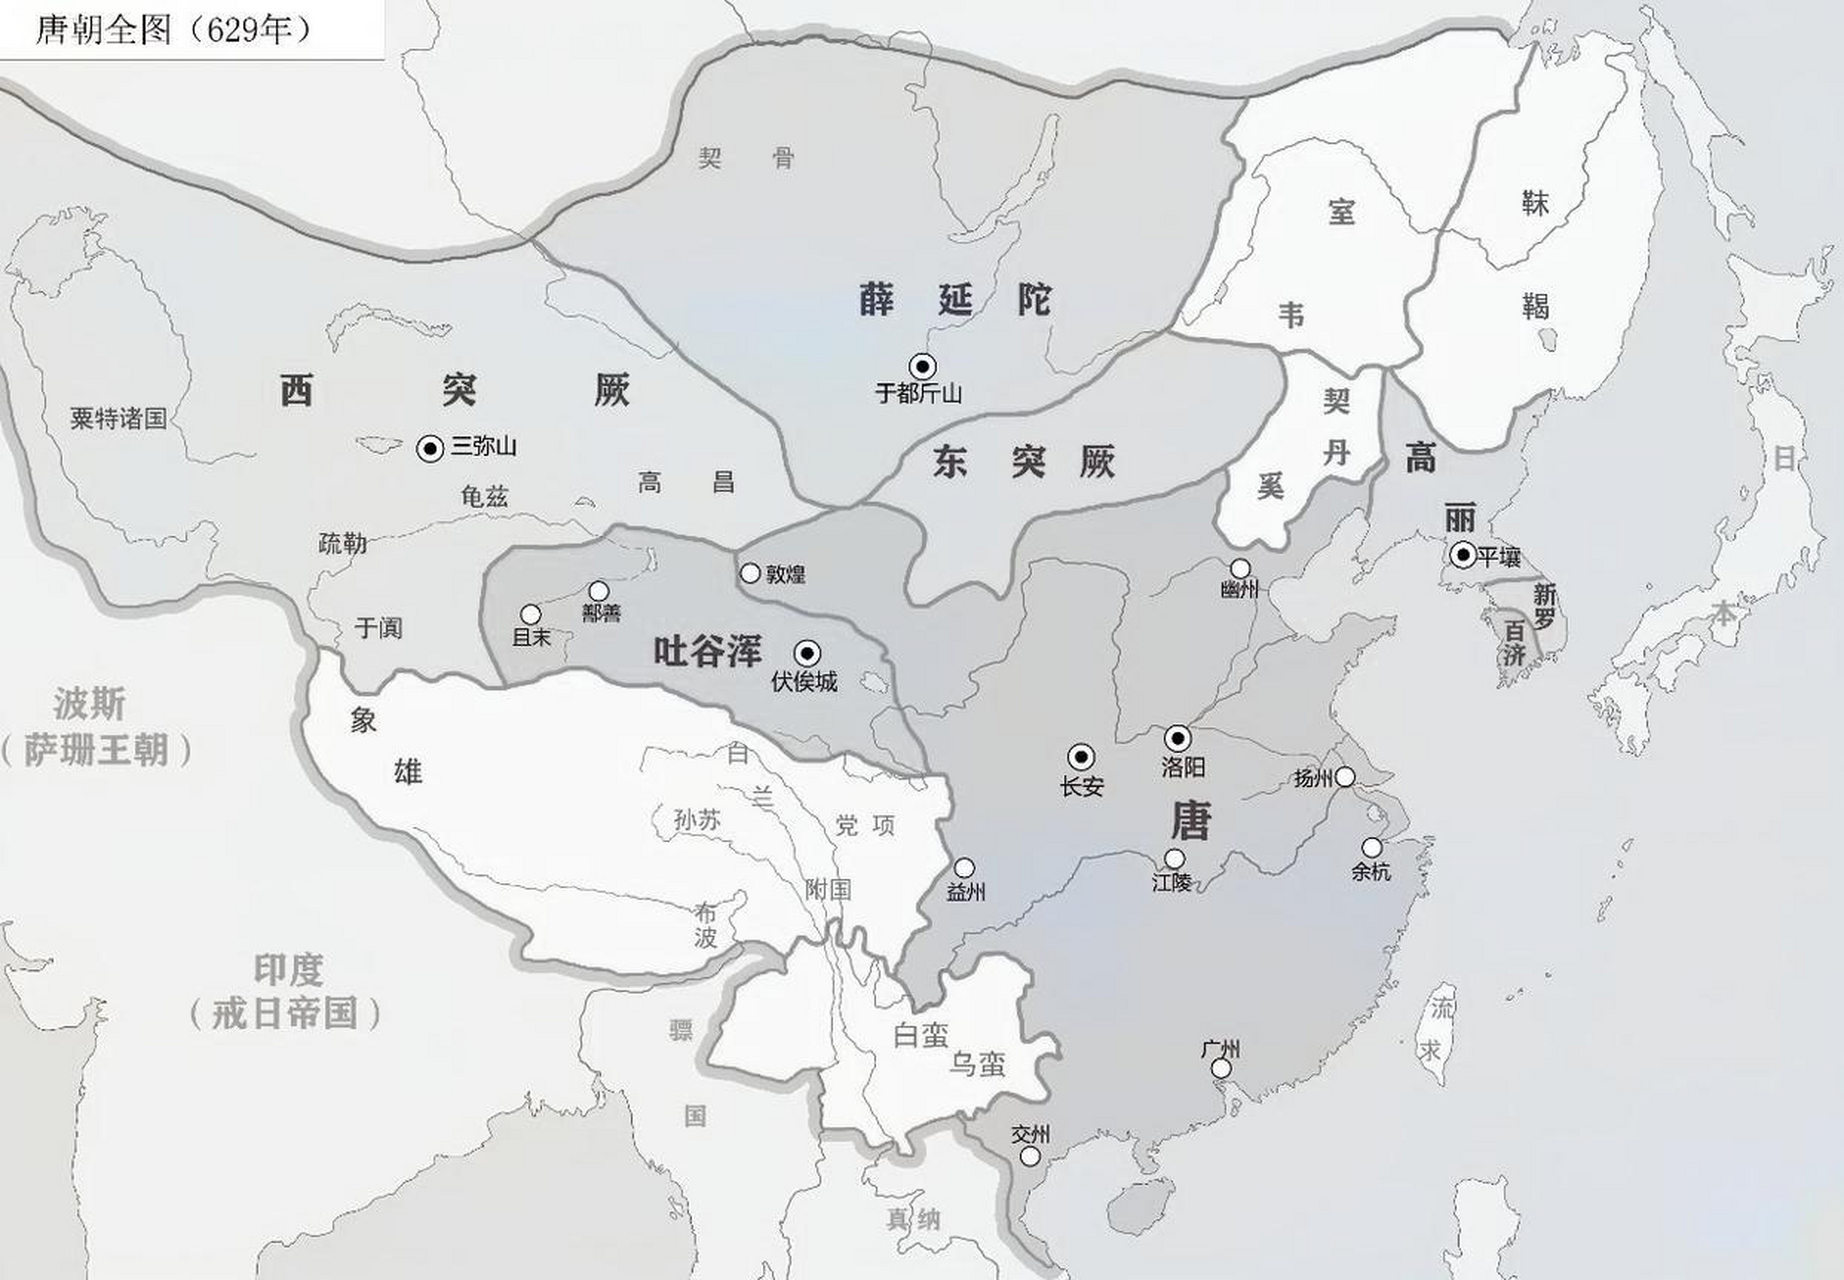 从629年到669年,唐朝的领土从完全统一走向繁荣